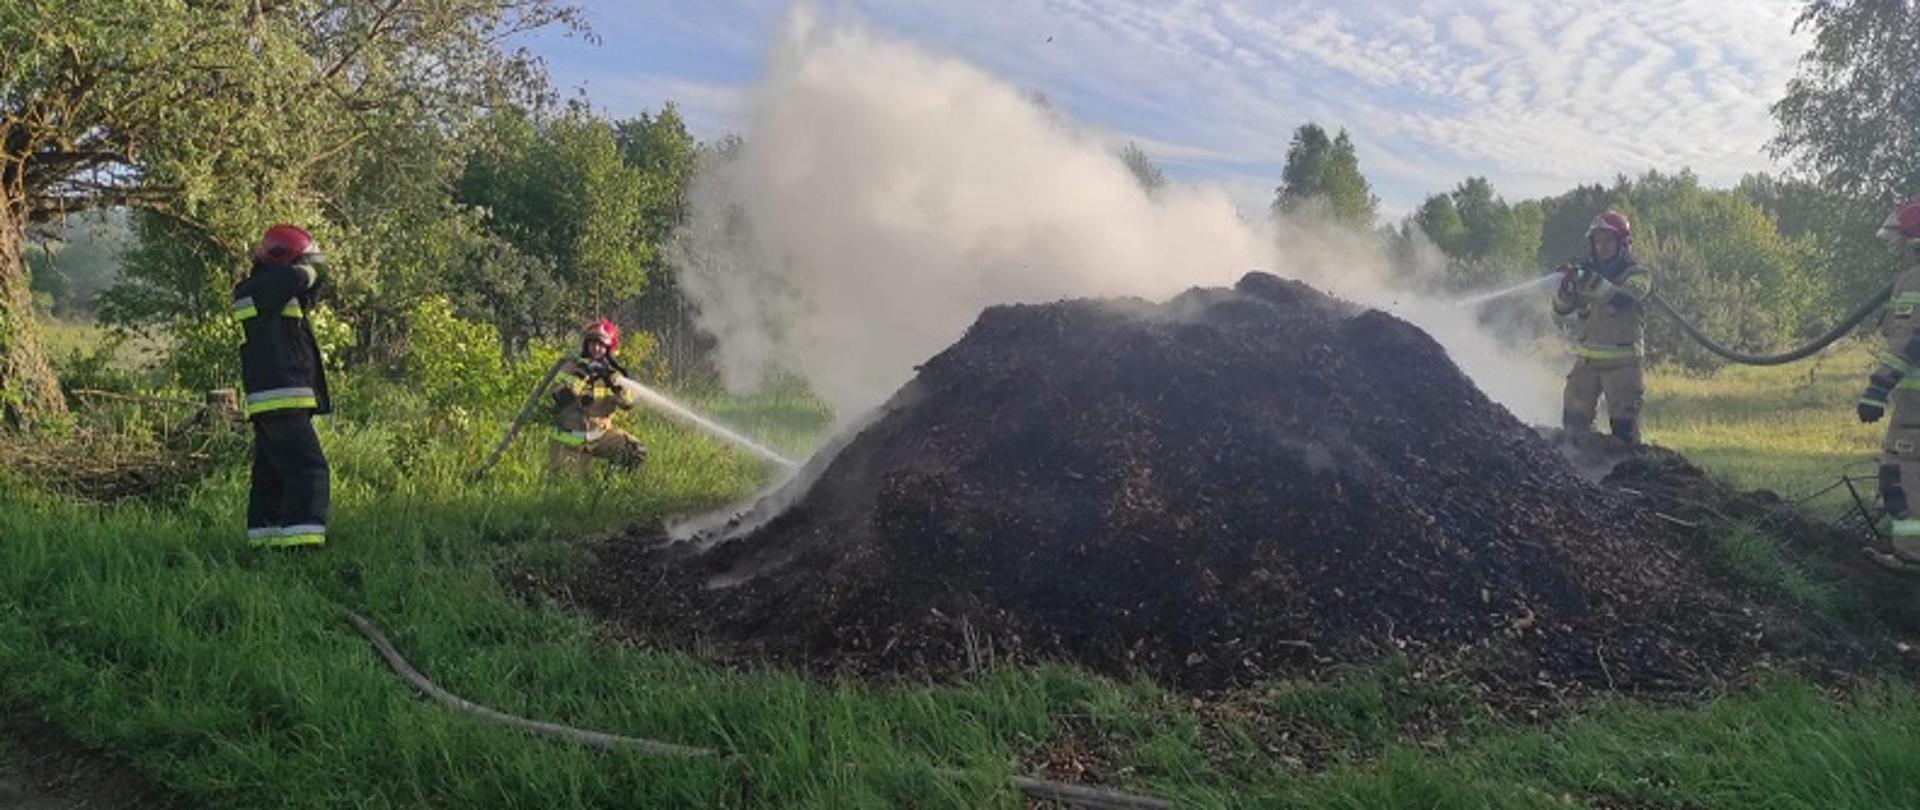 Zdjęcie przedstawia akcję gaśniczą pożaru hałdy zrębków leśnych w miejscowości Byszyno. Wokół zwaliska zrębków czworo strażaków za pomocą linii gaśniczych dostarcza wodę na miejsce pożaru. Strażacy umundurowani w ubrania specjalne